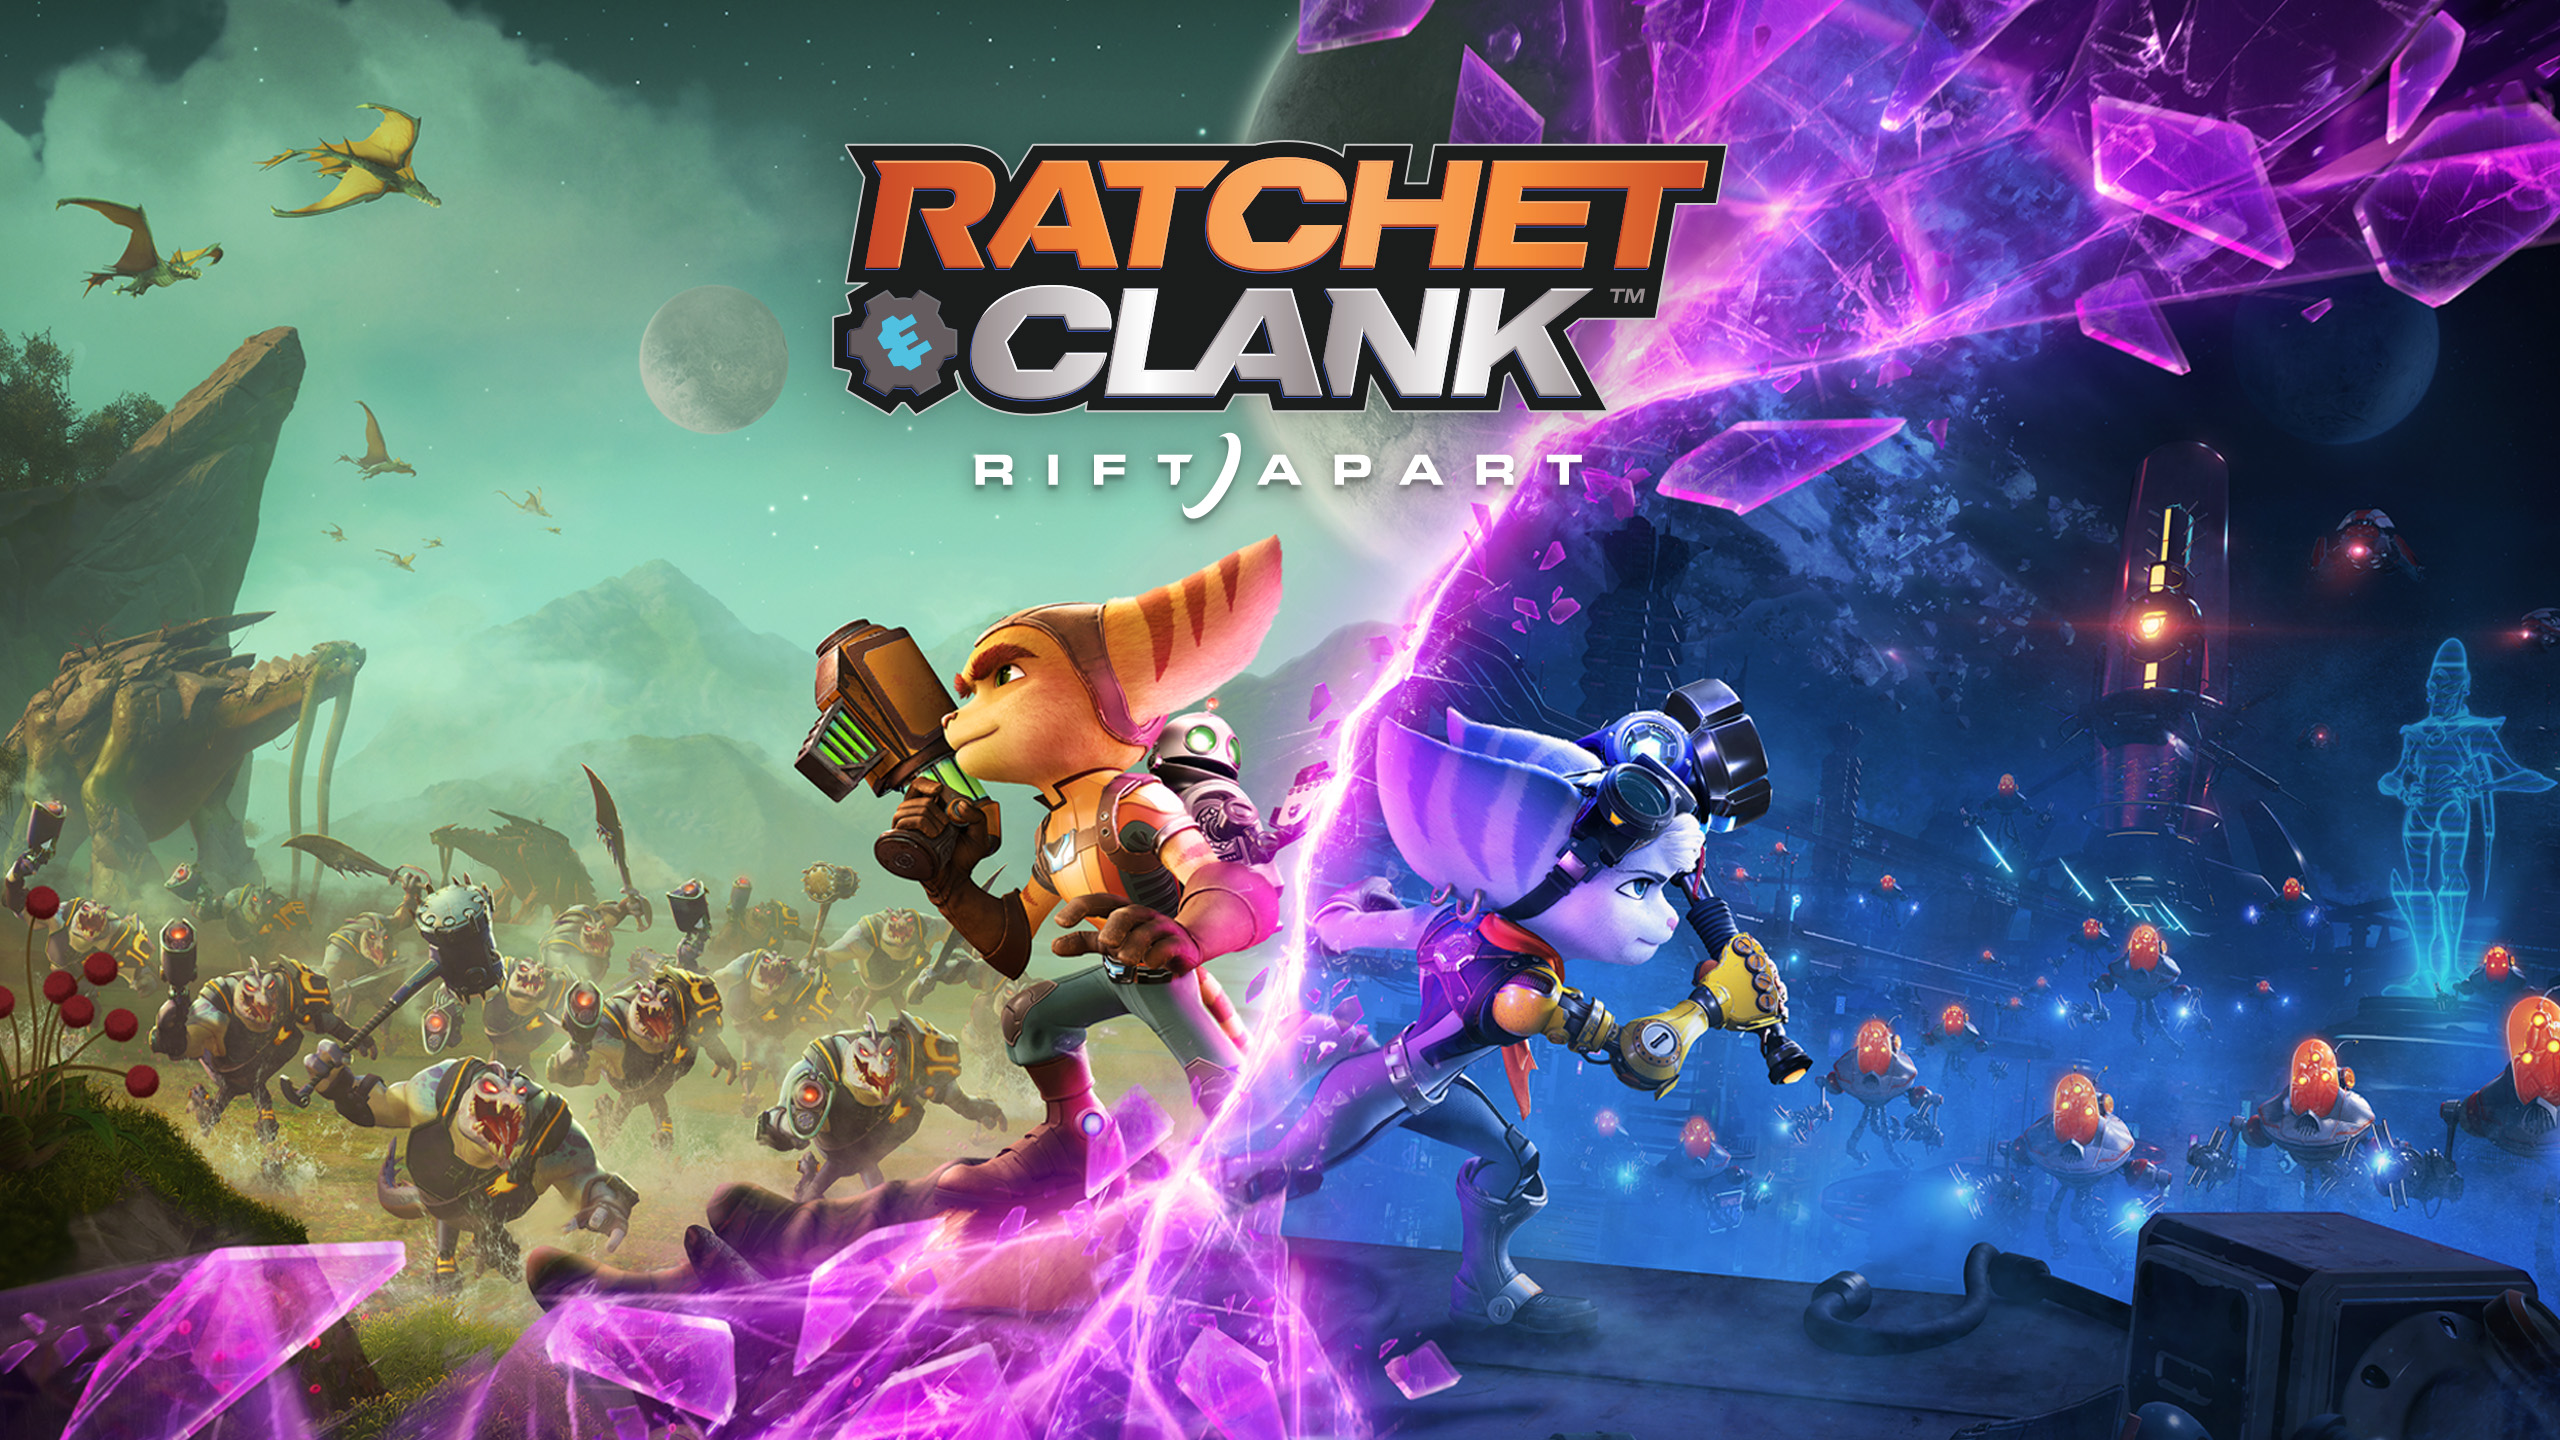 Ratchet & Clank: Rift Apart ИГРОМУЛЬФИЛЬМ ►#1Прохождение без комментариев (Русская озвучка)